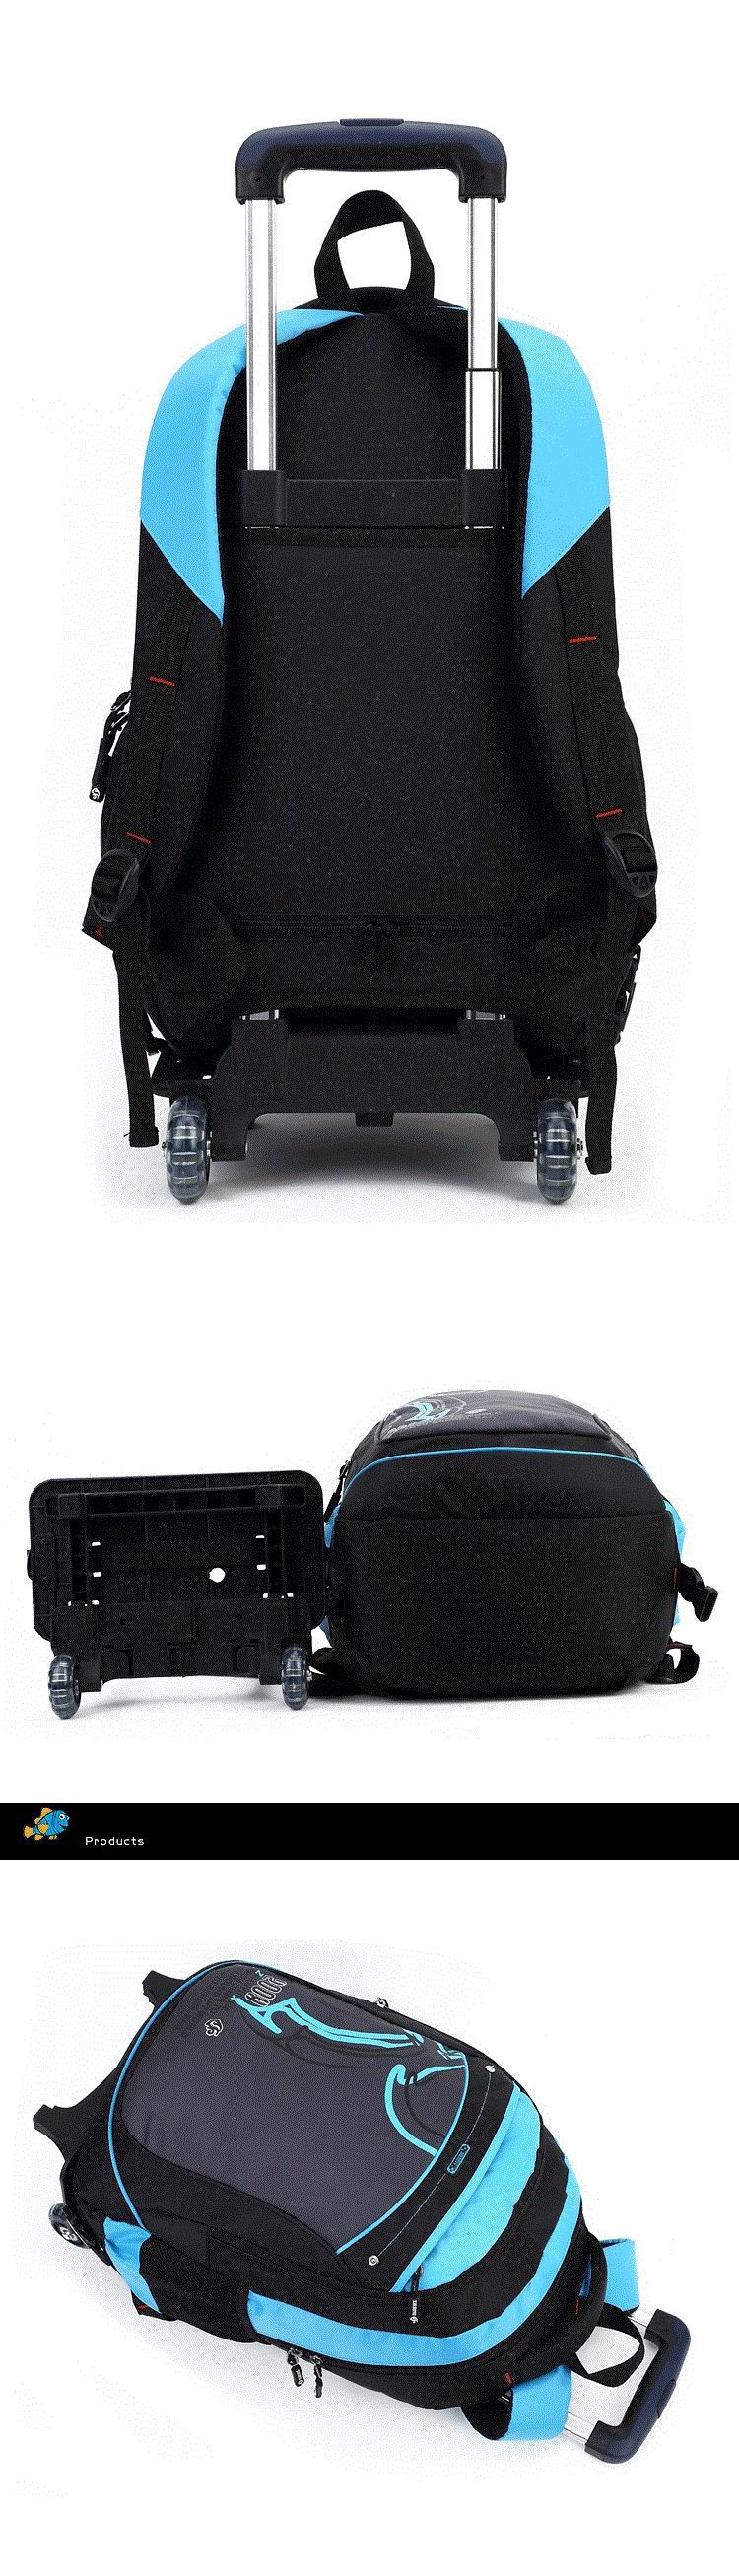 school-trolley-backpack-bag-wheels-backpack-luggage-travel-3